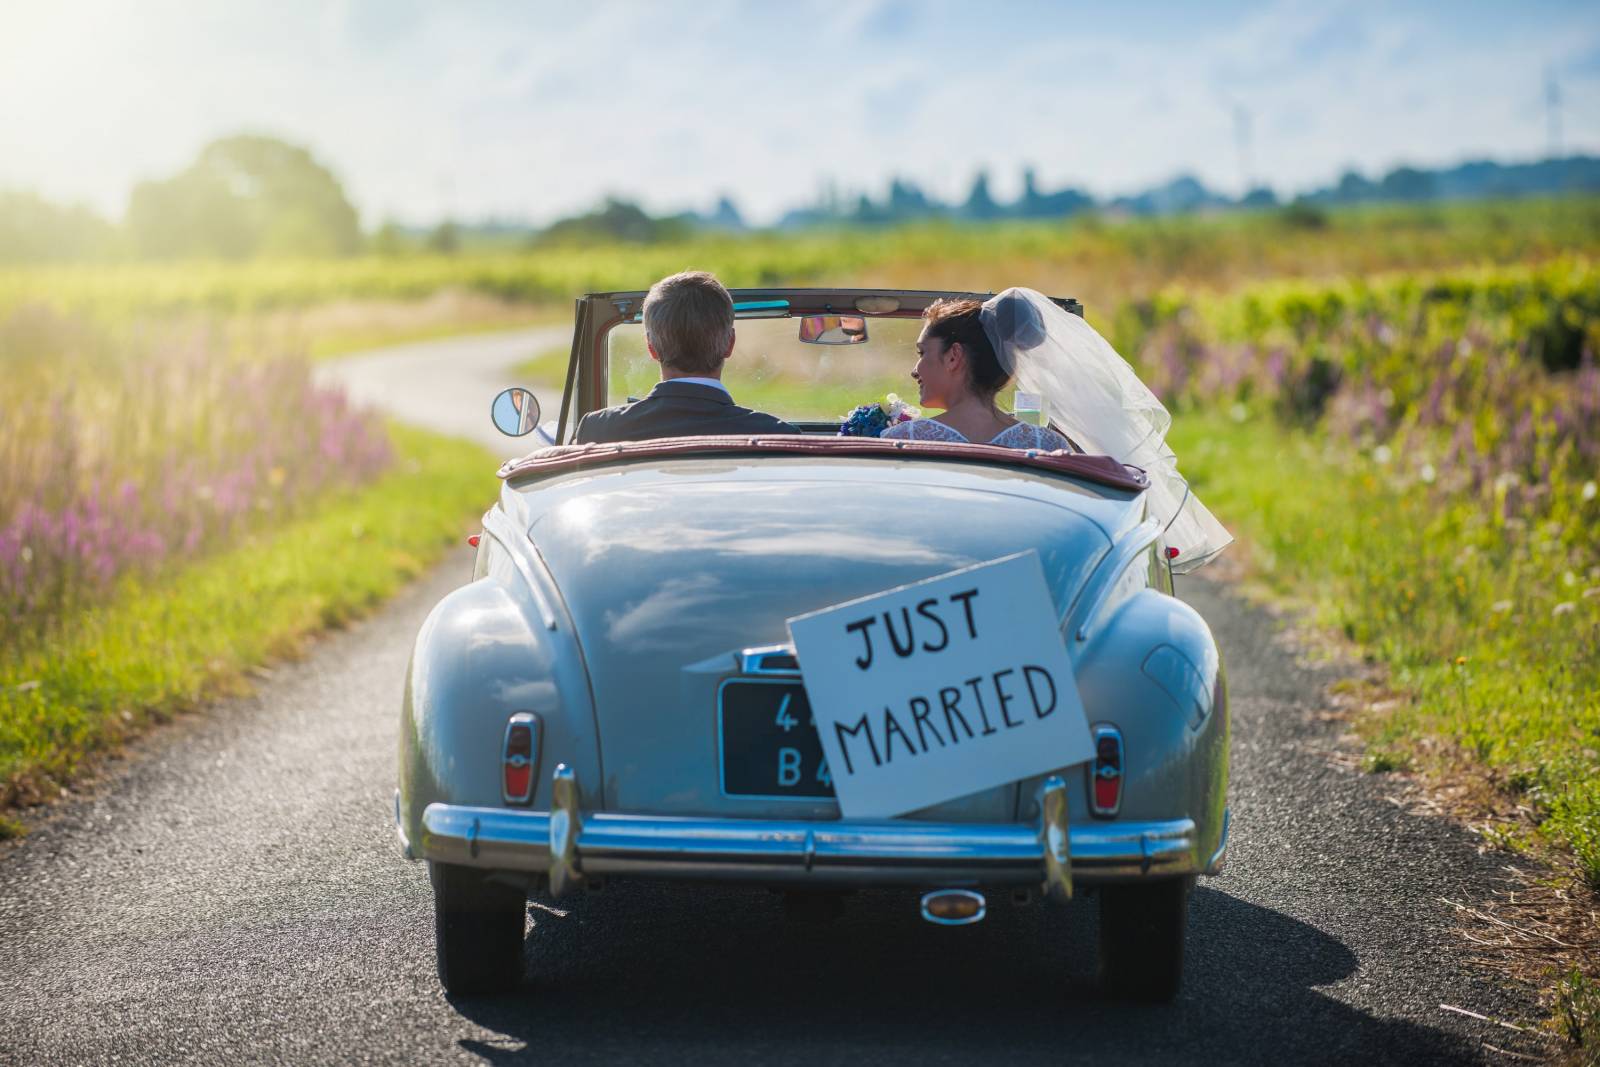 Amazing Destinations-Huwelijksreizen-just married